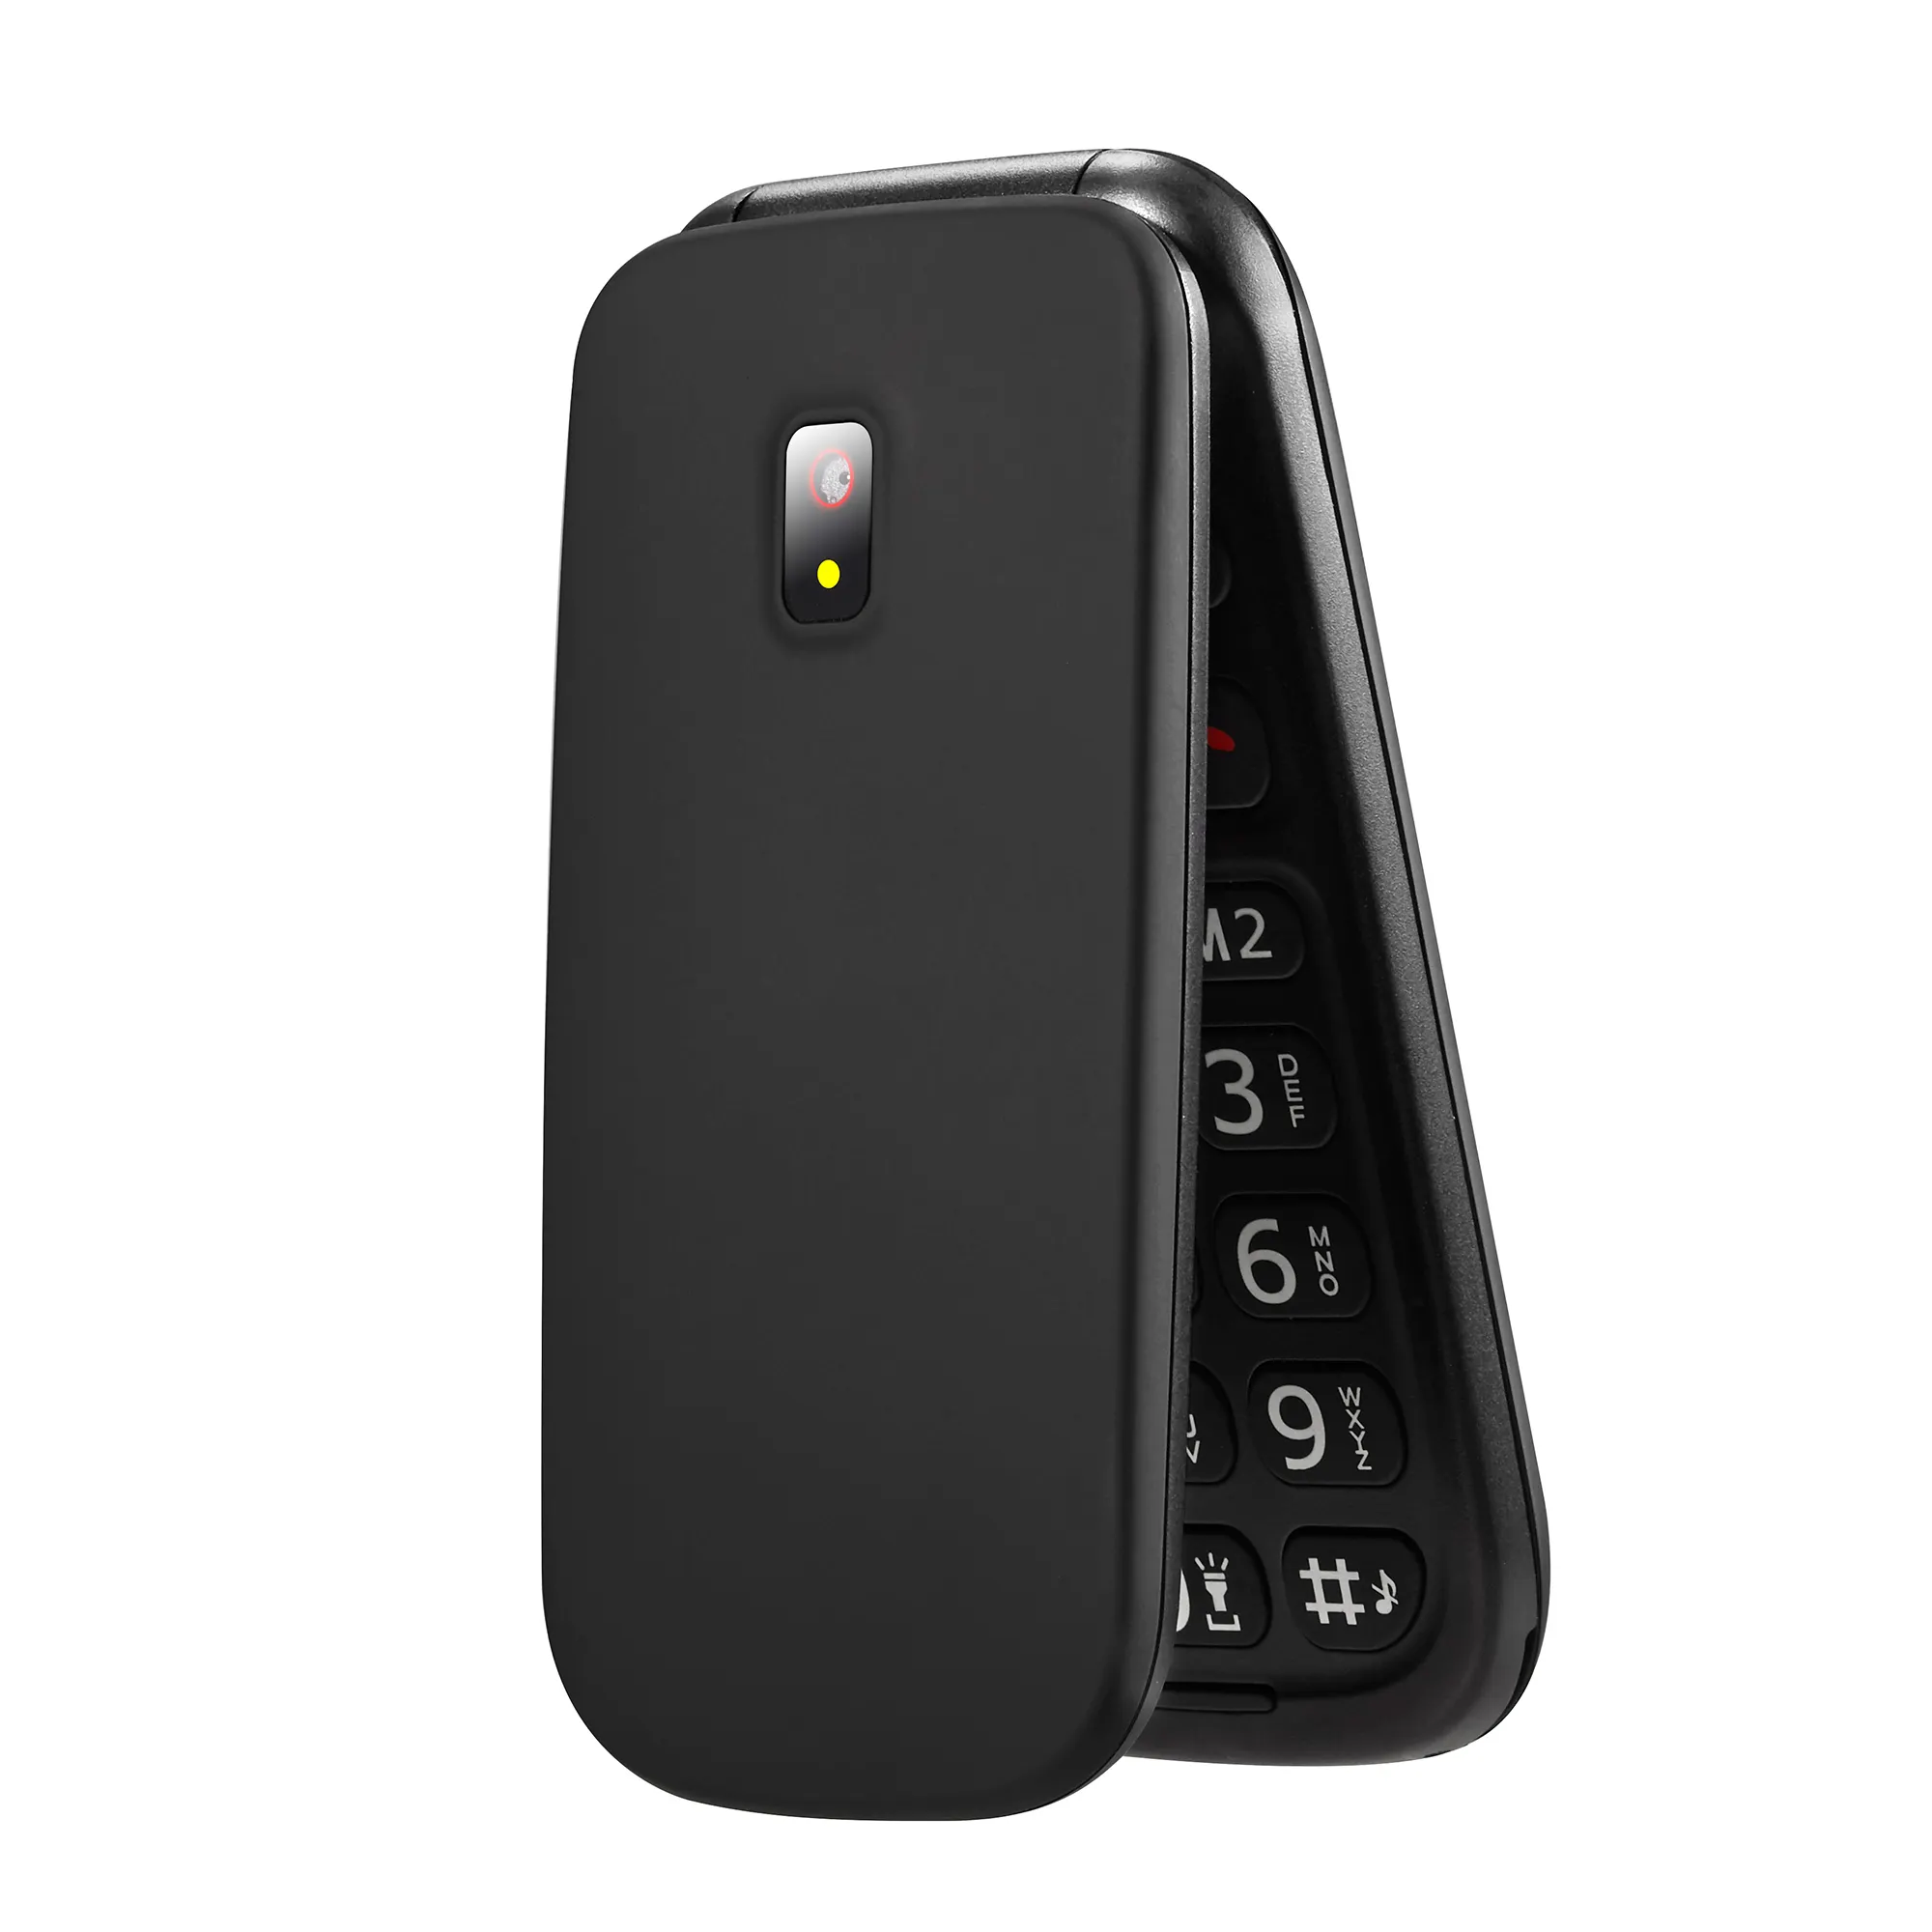 1.8 pouces mini flip téléphone GSM Quad band senior citizen téléphone mobile 2g pas cher flip phone